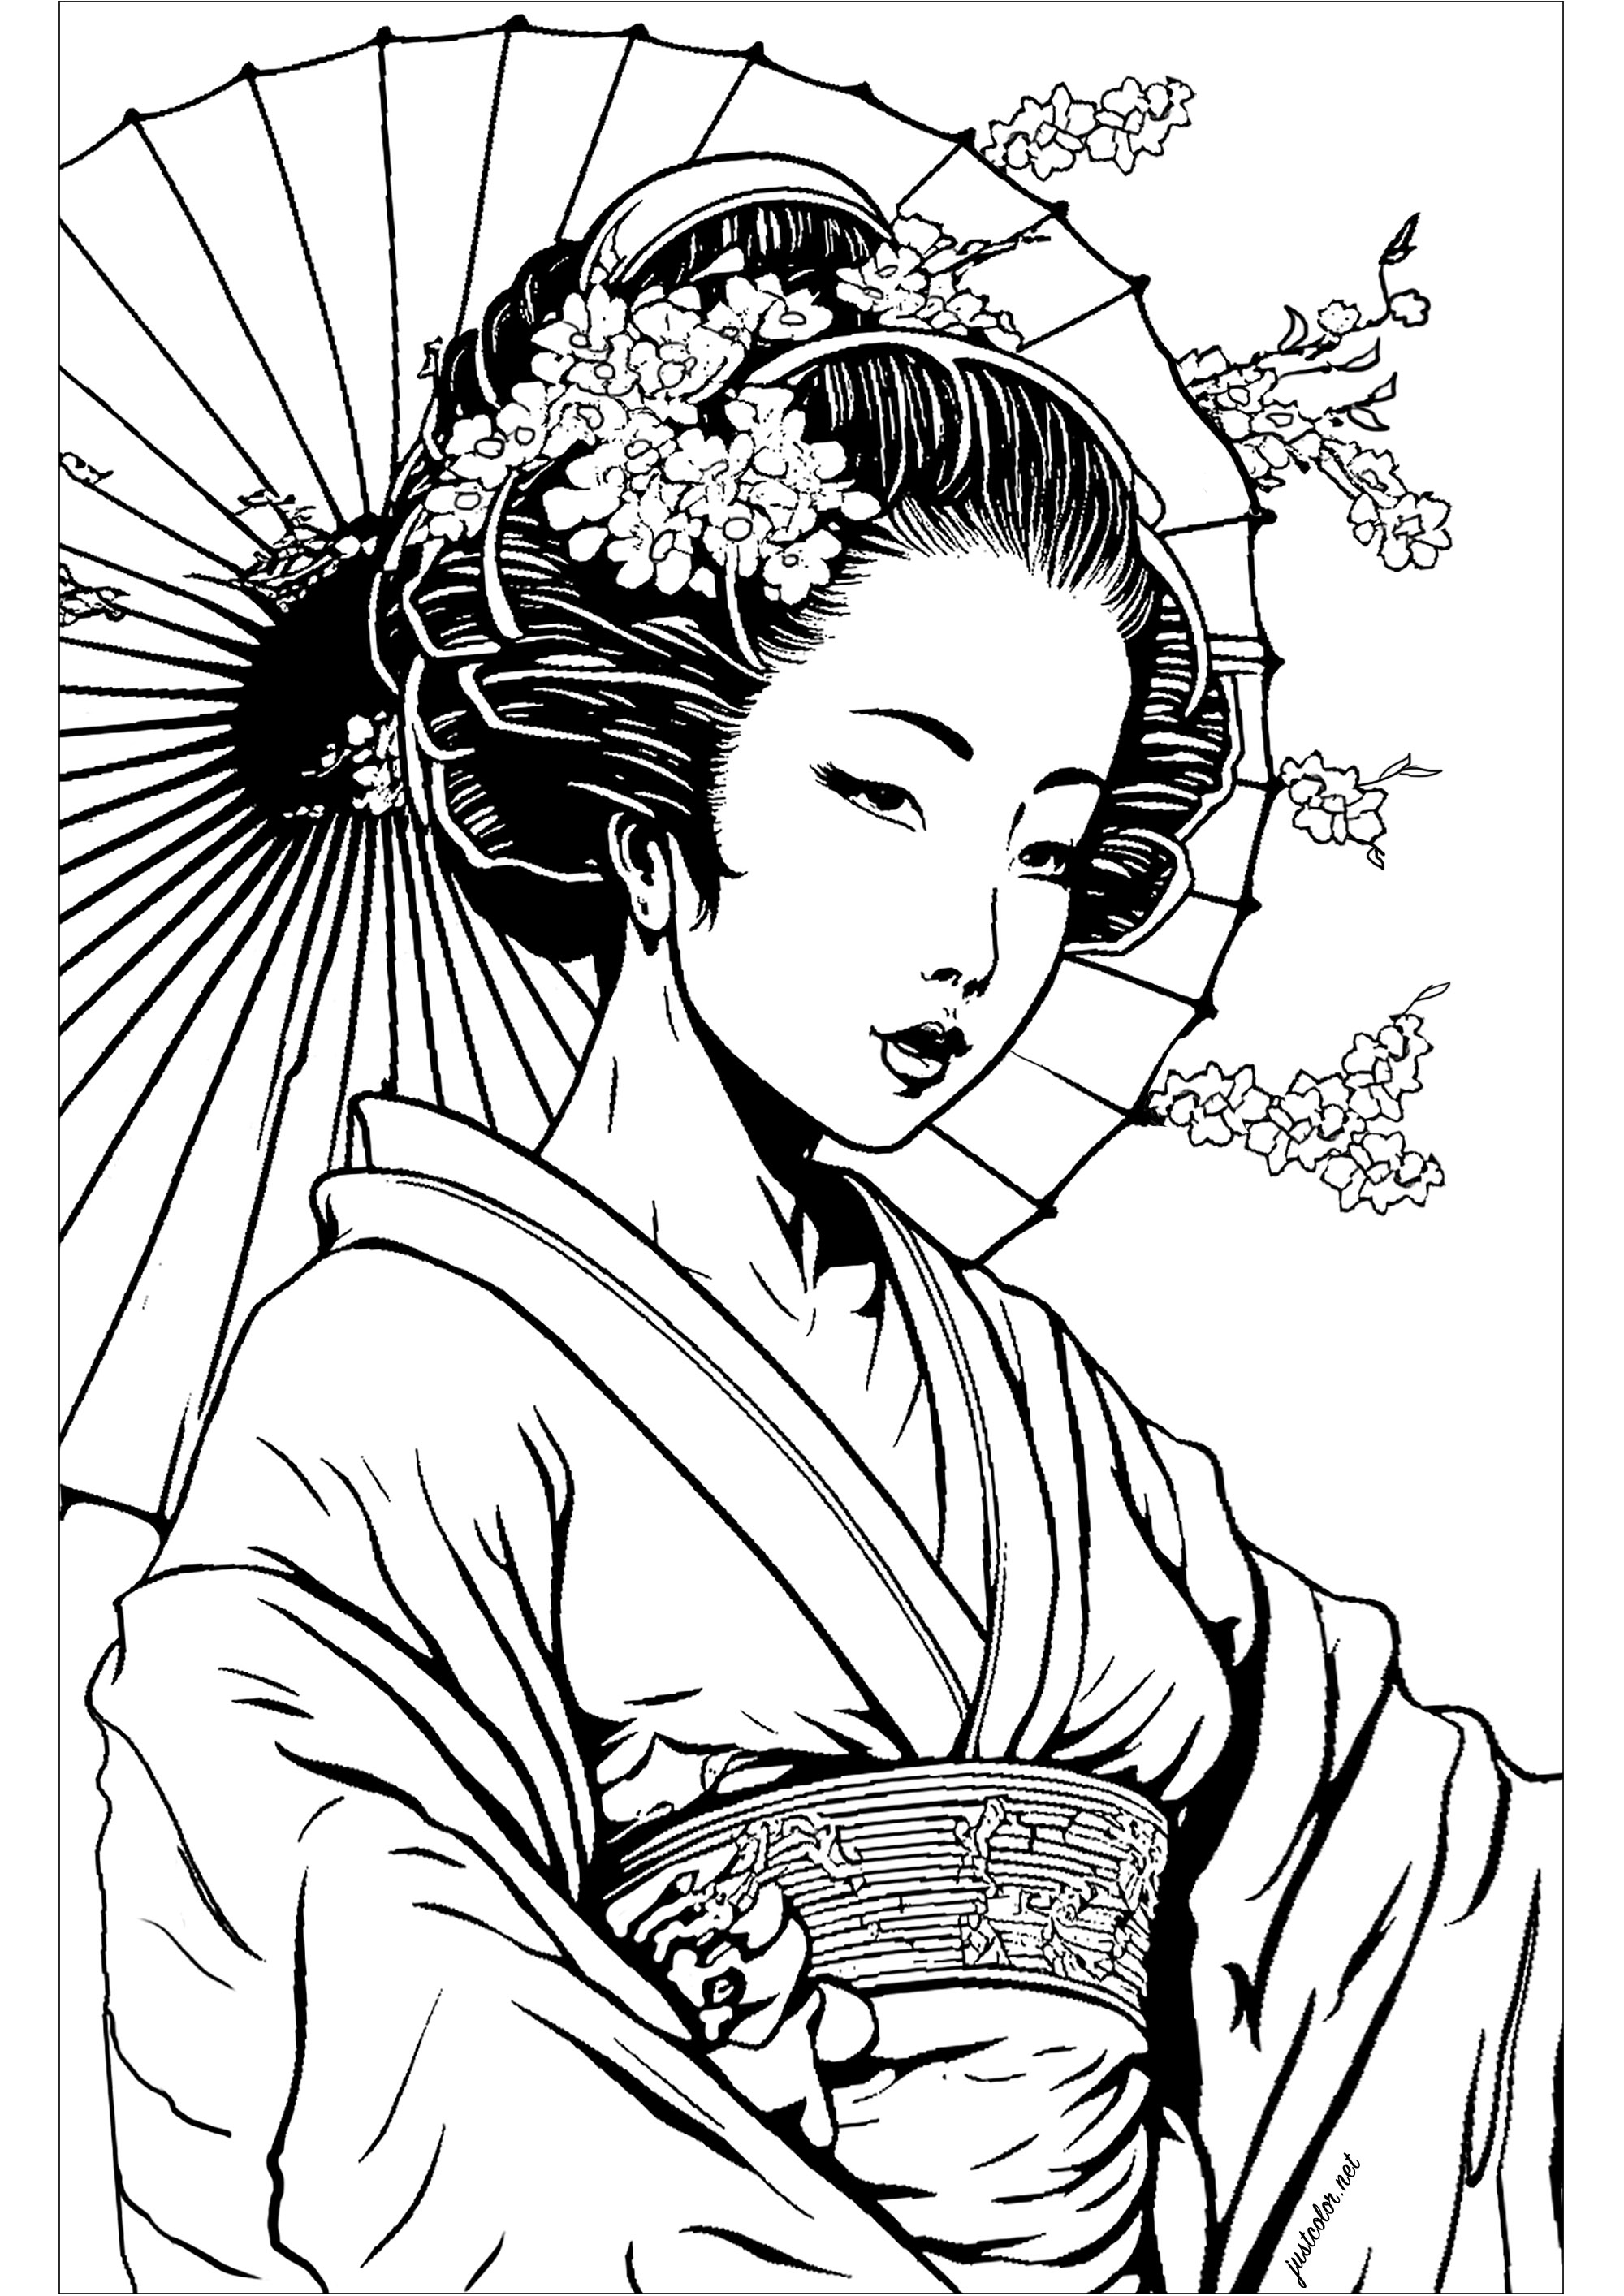 Hermosa Geisha para colorear. La Geisha está representada en una pose clásica, con una expresión serena y benévola. La composición es muy sencilla, pero resulta muy expresiva y te transmitirá una sensación de calma y relajación.